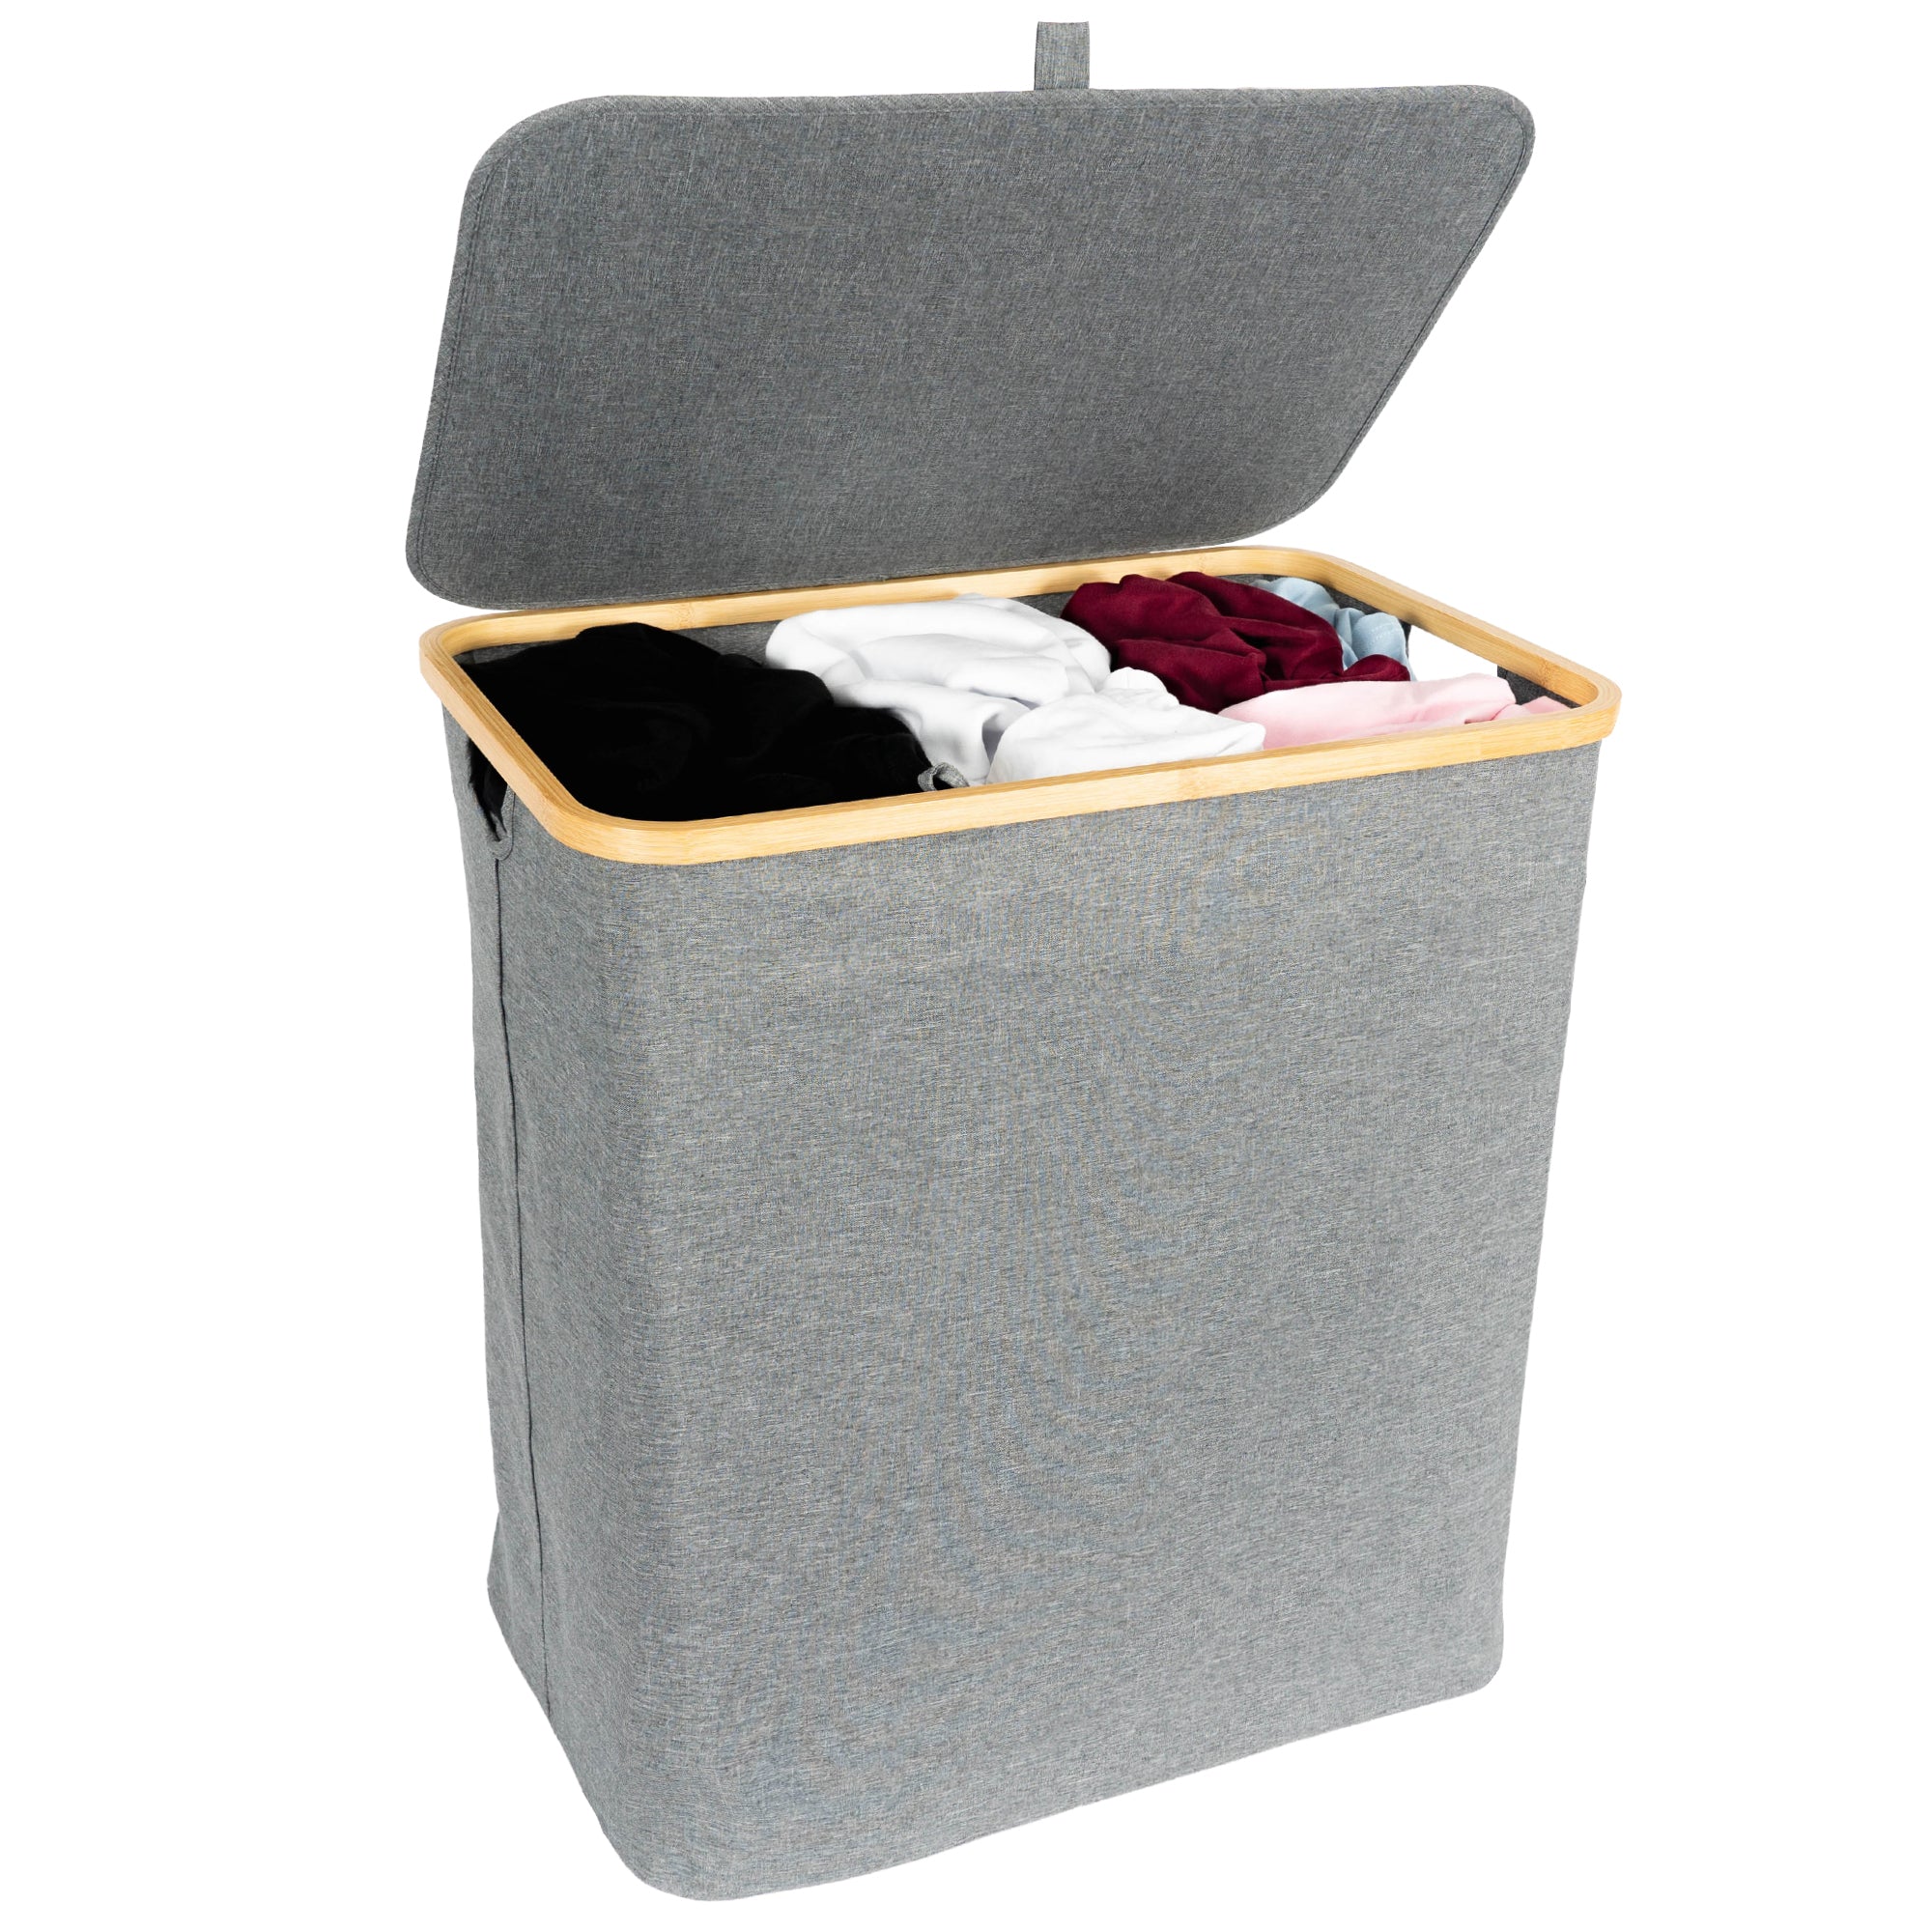 JoFlow® Wasmand met Wassorteerder Deksel | Wasbox met vakken Ba